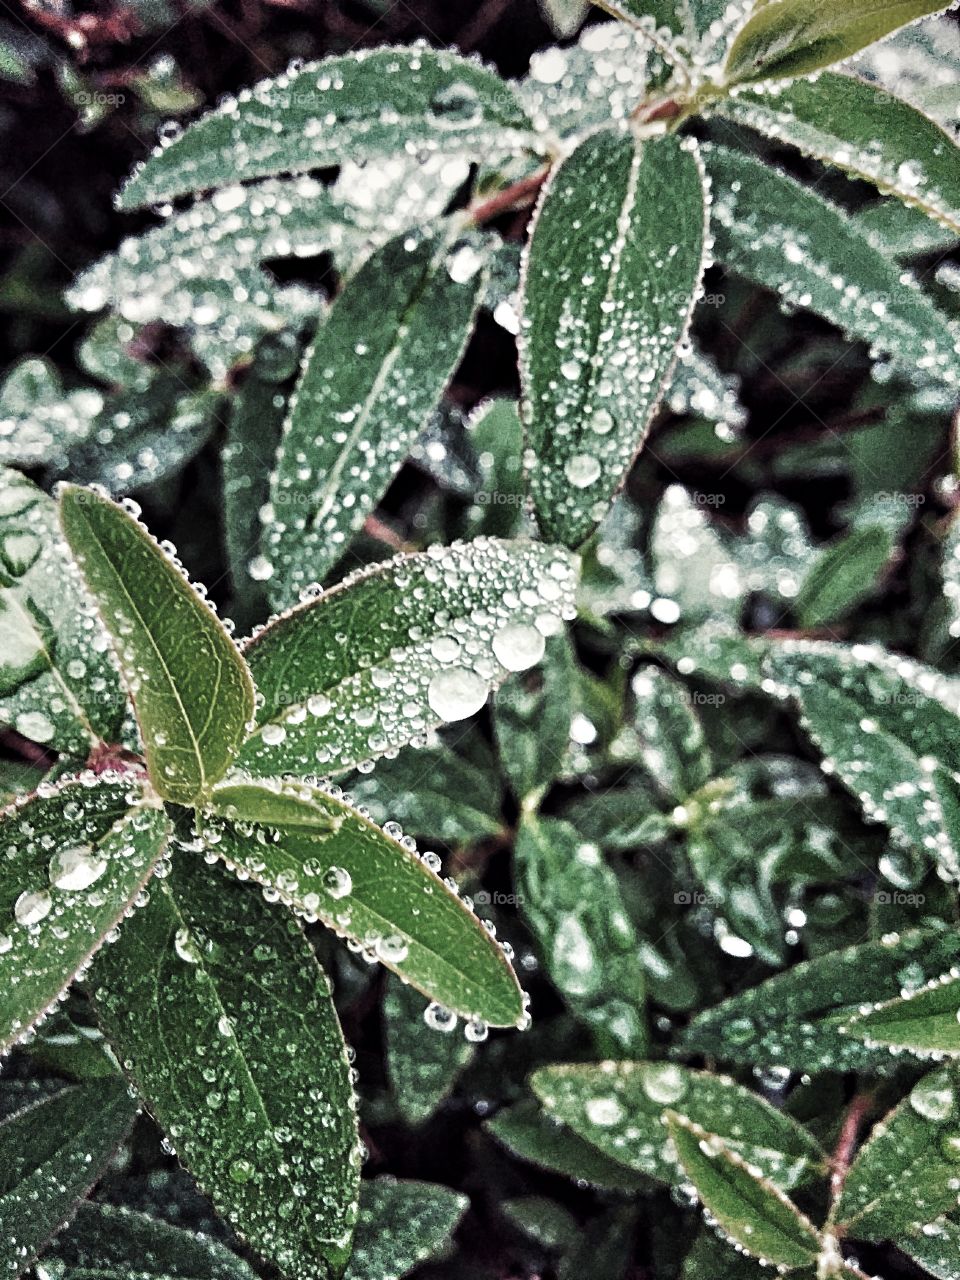 Frozen drops on green leaf